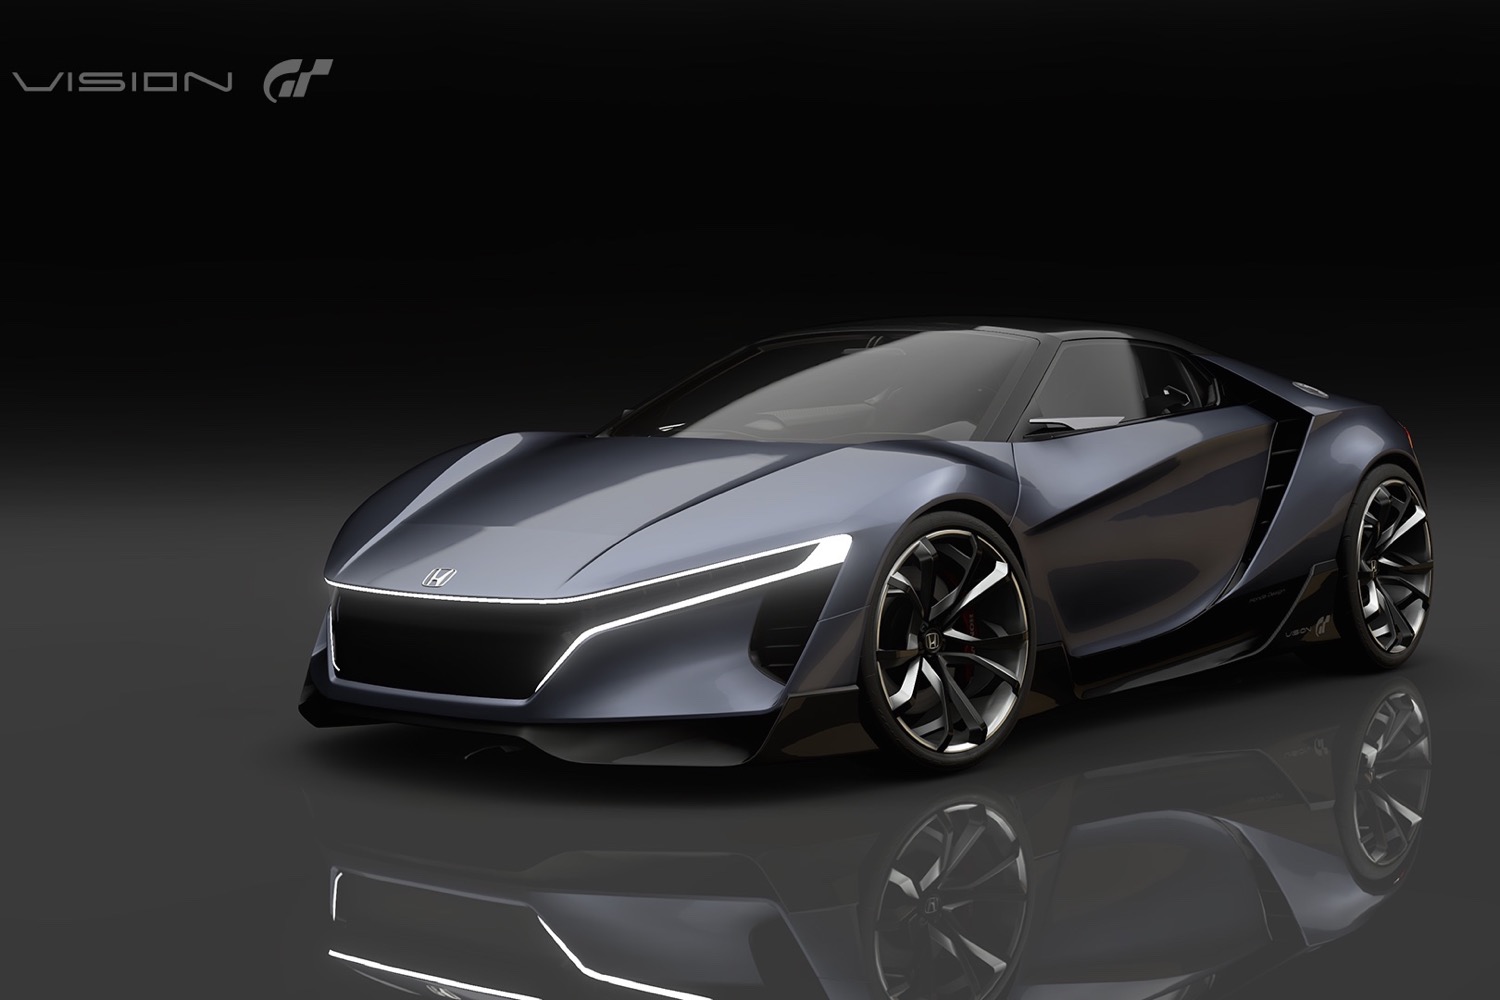 Honda Sports Vision Gran Turismo concept